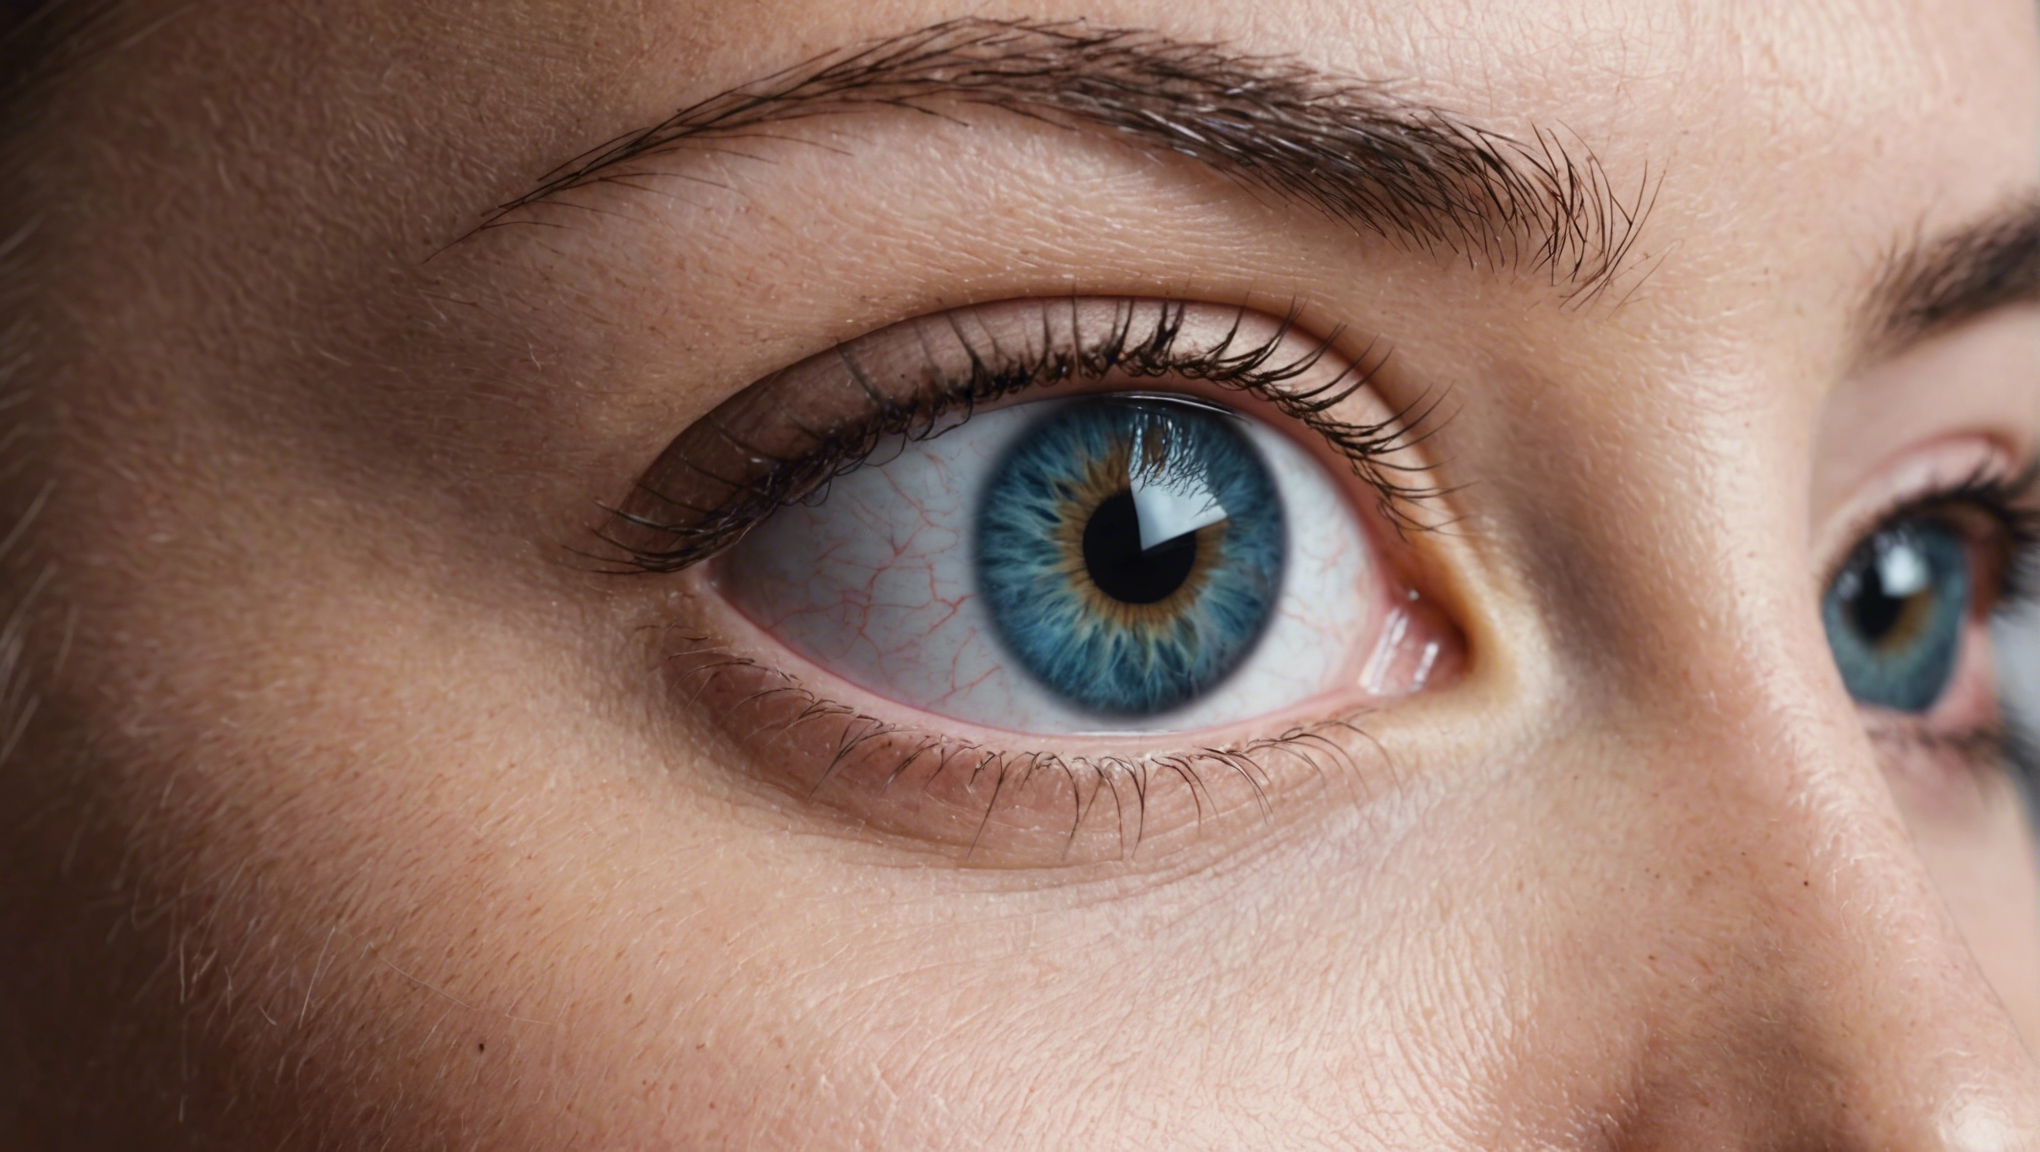 découvrez nos conseils pour des soins post-opératoires adaptés à la récupération de vos yeux après une intervention chirurgicale.